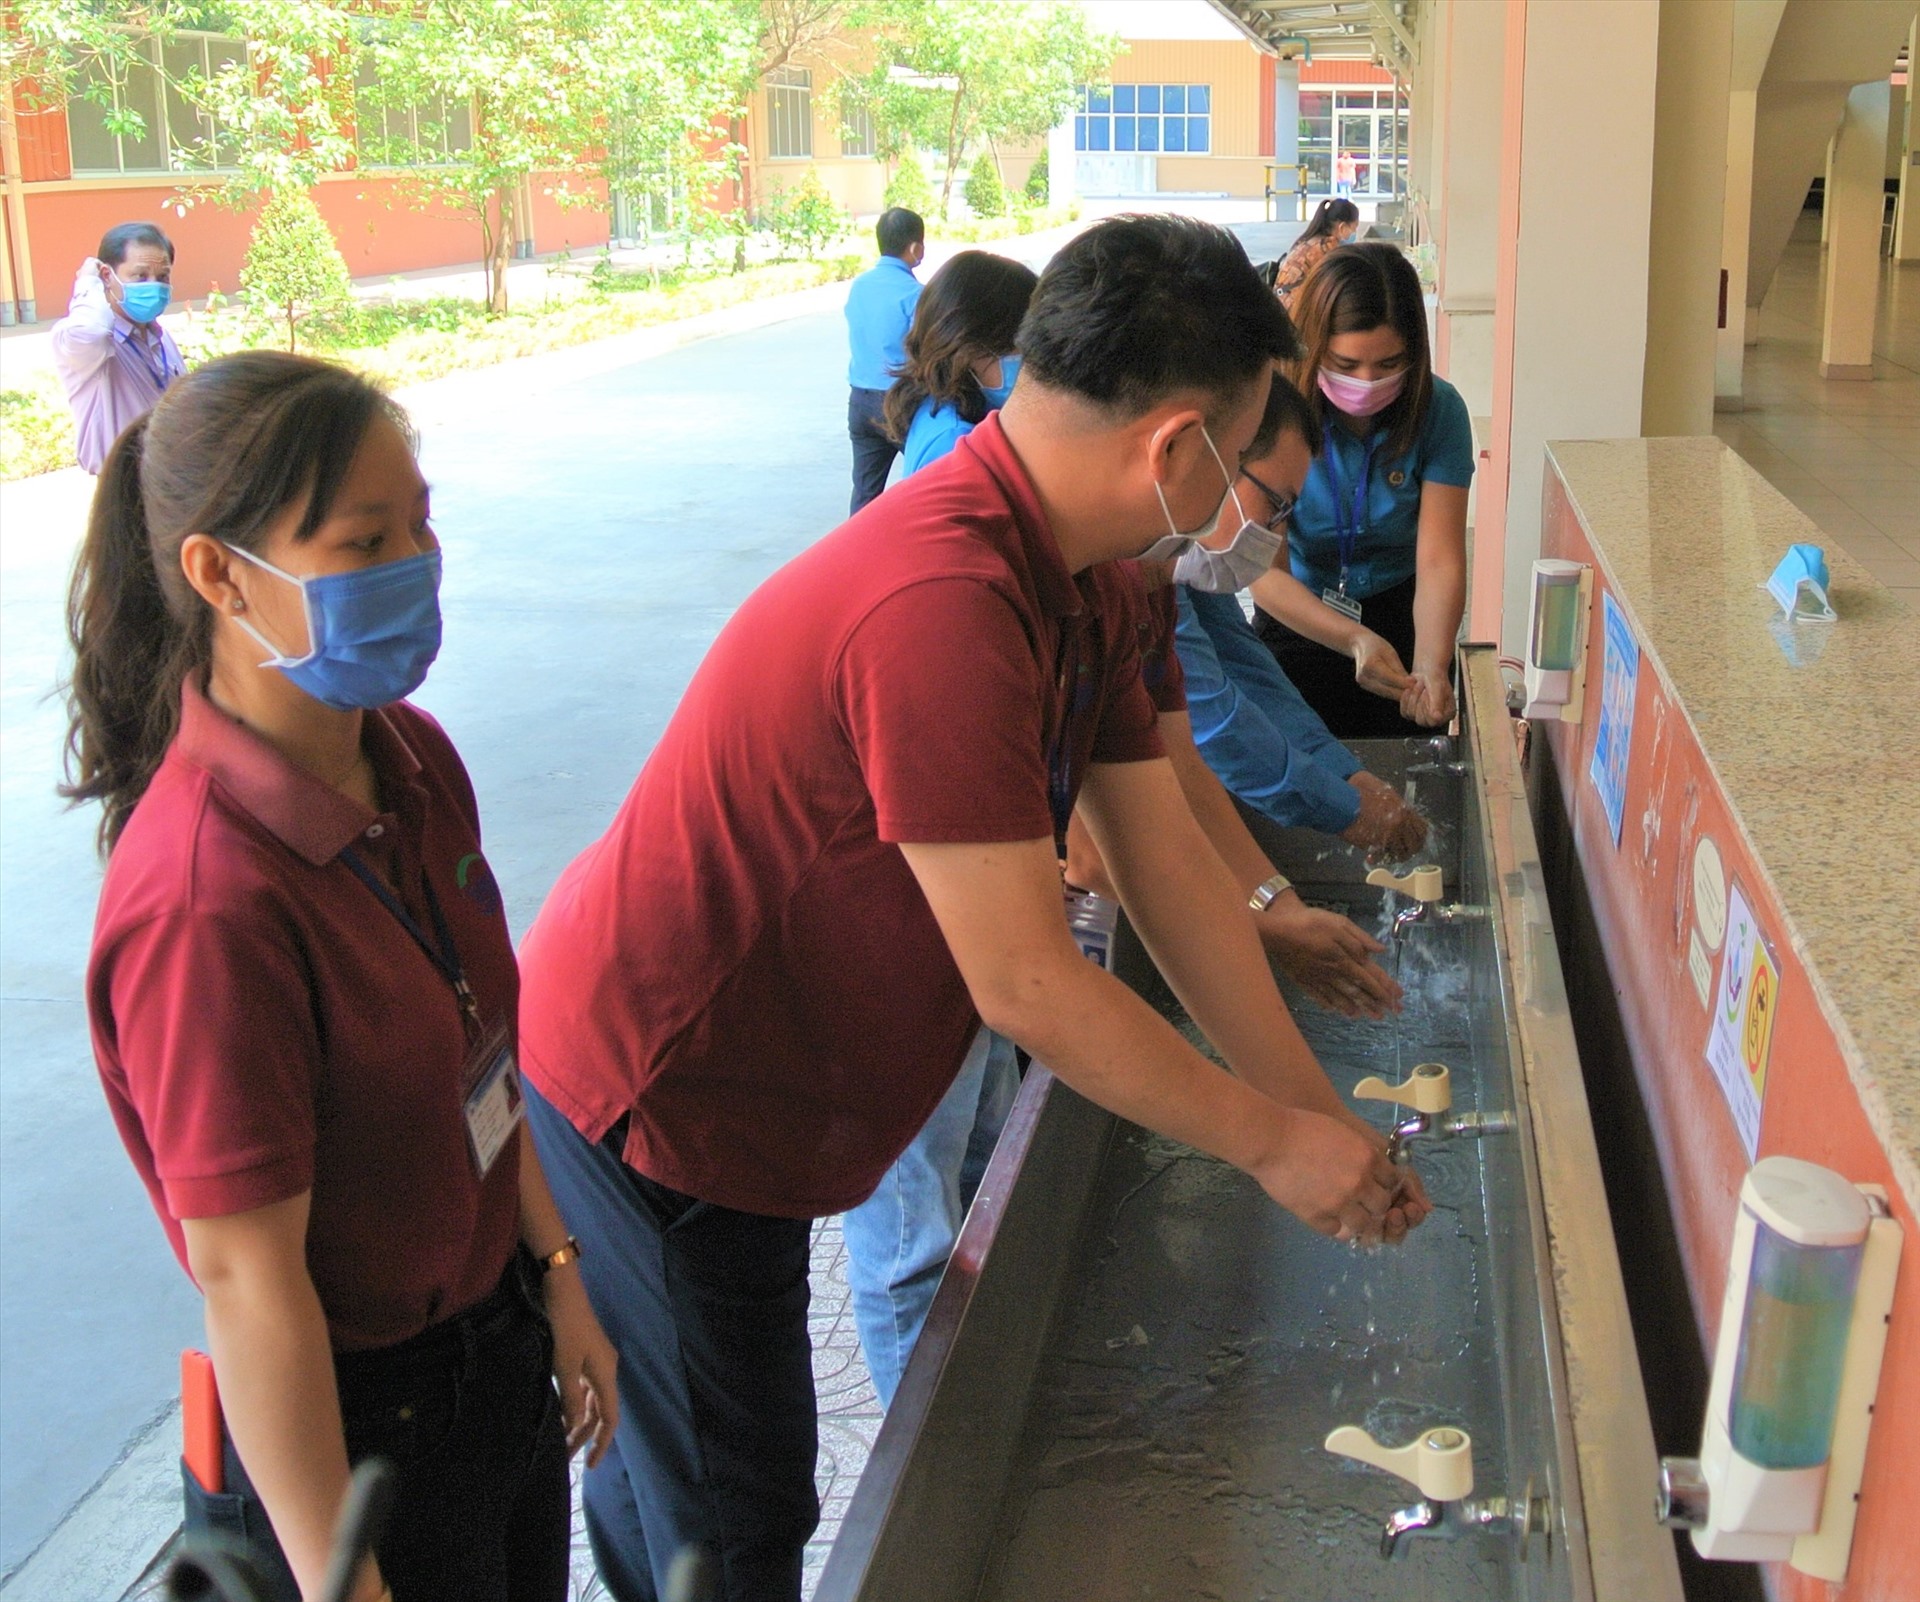 Đoàn giám sát và đại diện công ty cùng rửa tay tại nơi có trang bị nước sát khuẩn cho công nhân Công ty Worldon sử dụng. Ảnh Nam Dương